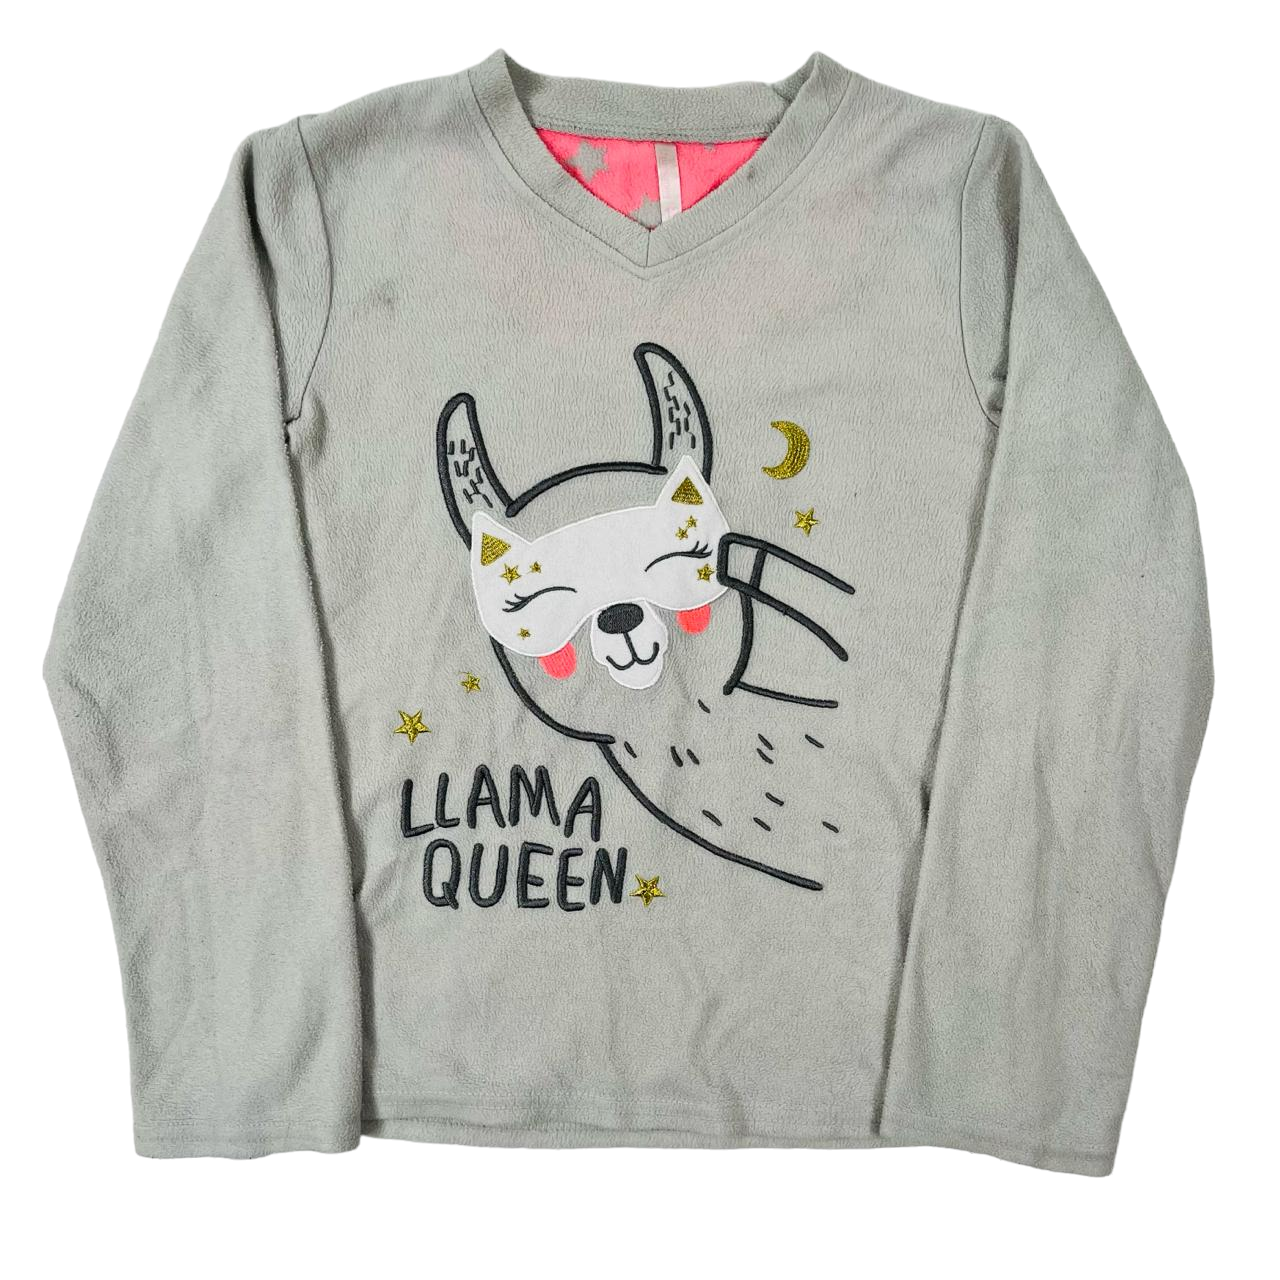 Poleron de pijama polar gris con diseño de llama queen